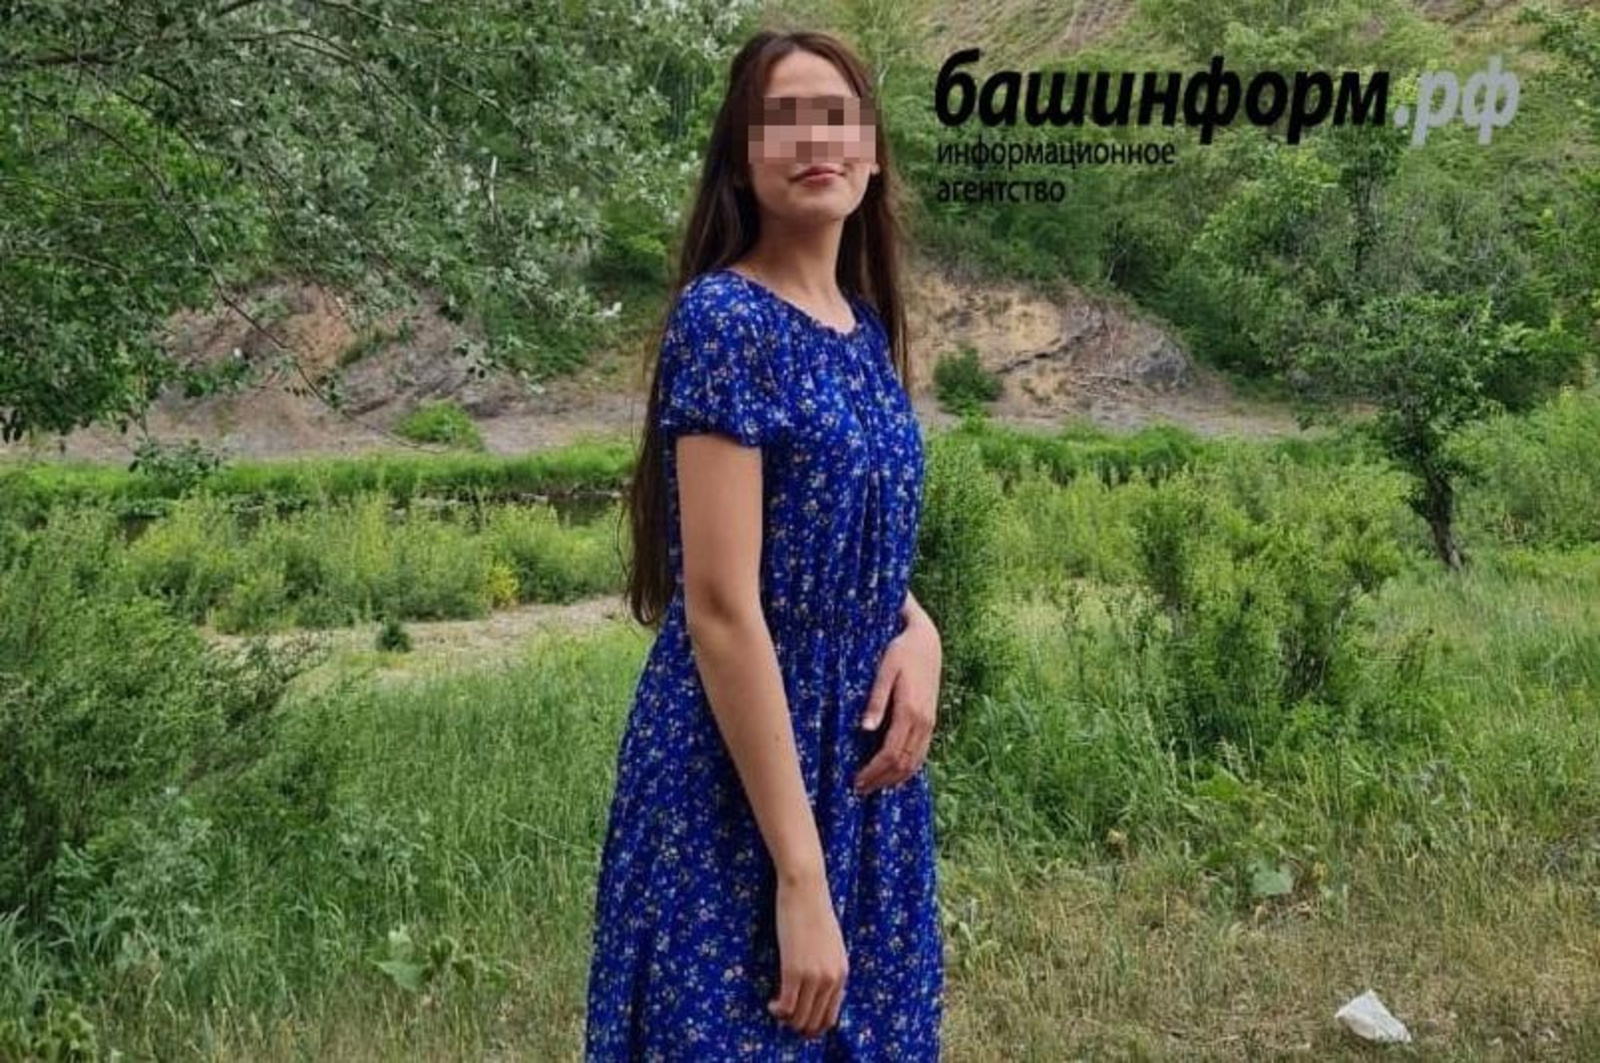 В Оренбургской области убили троих студенток из Башкирии